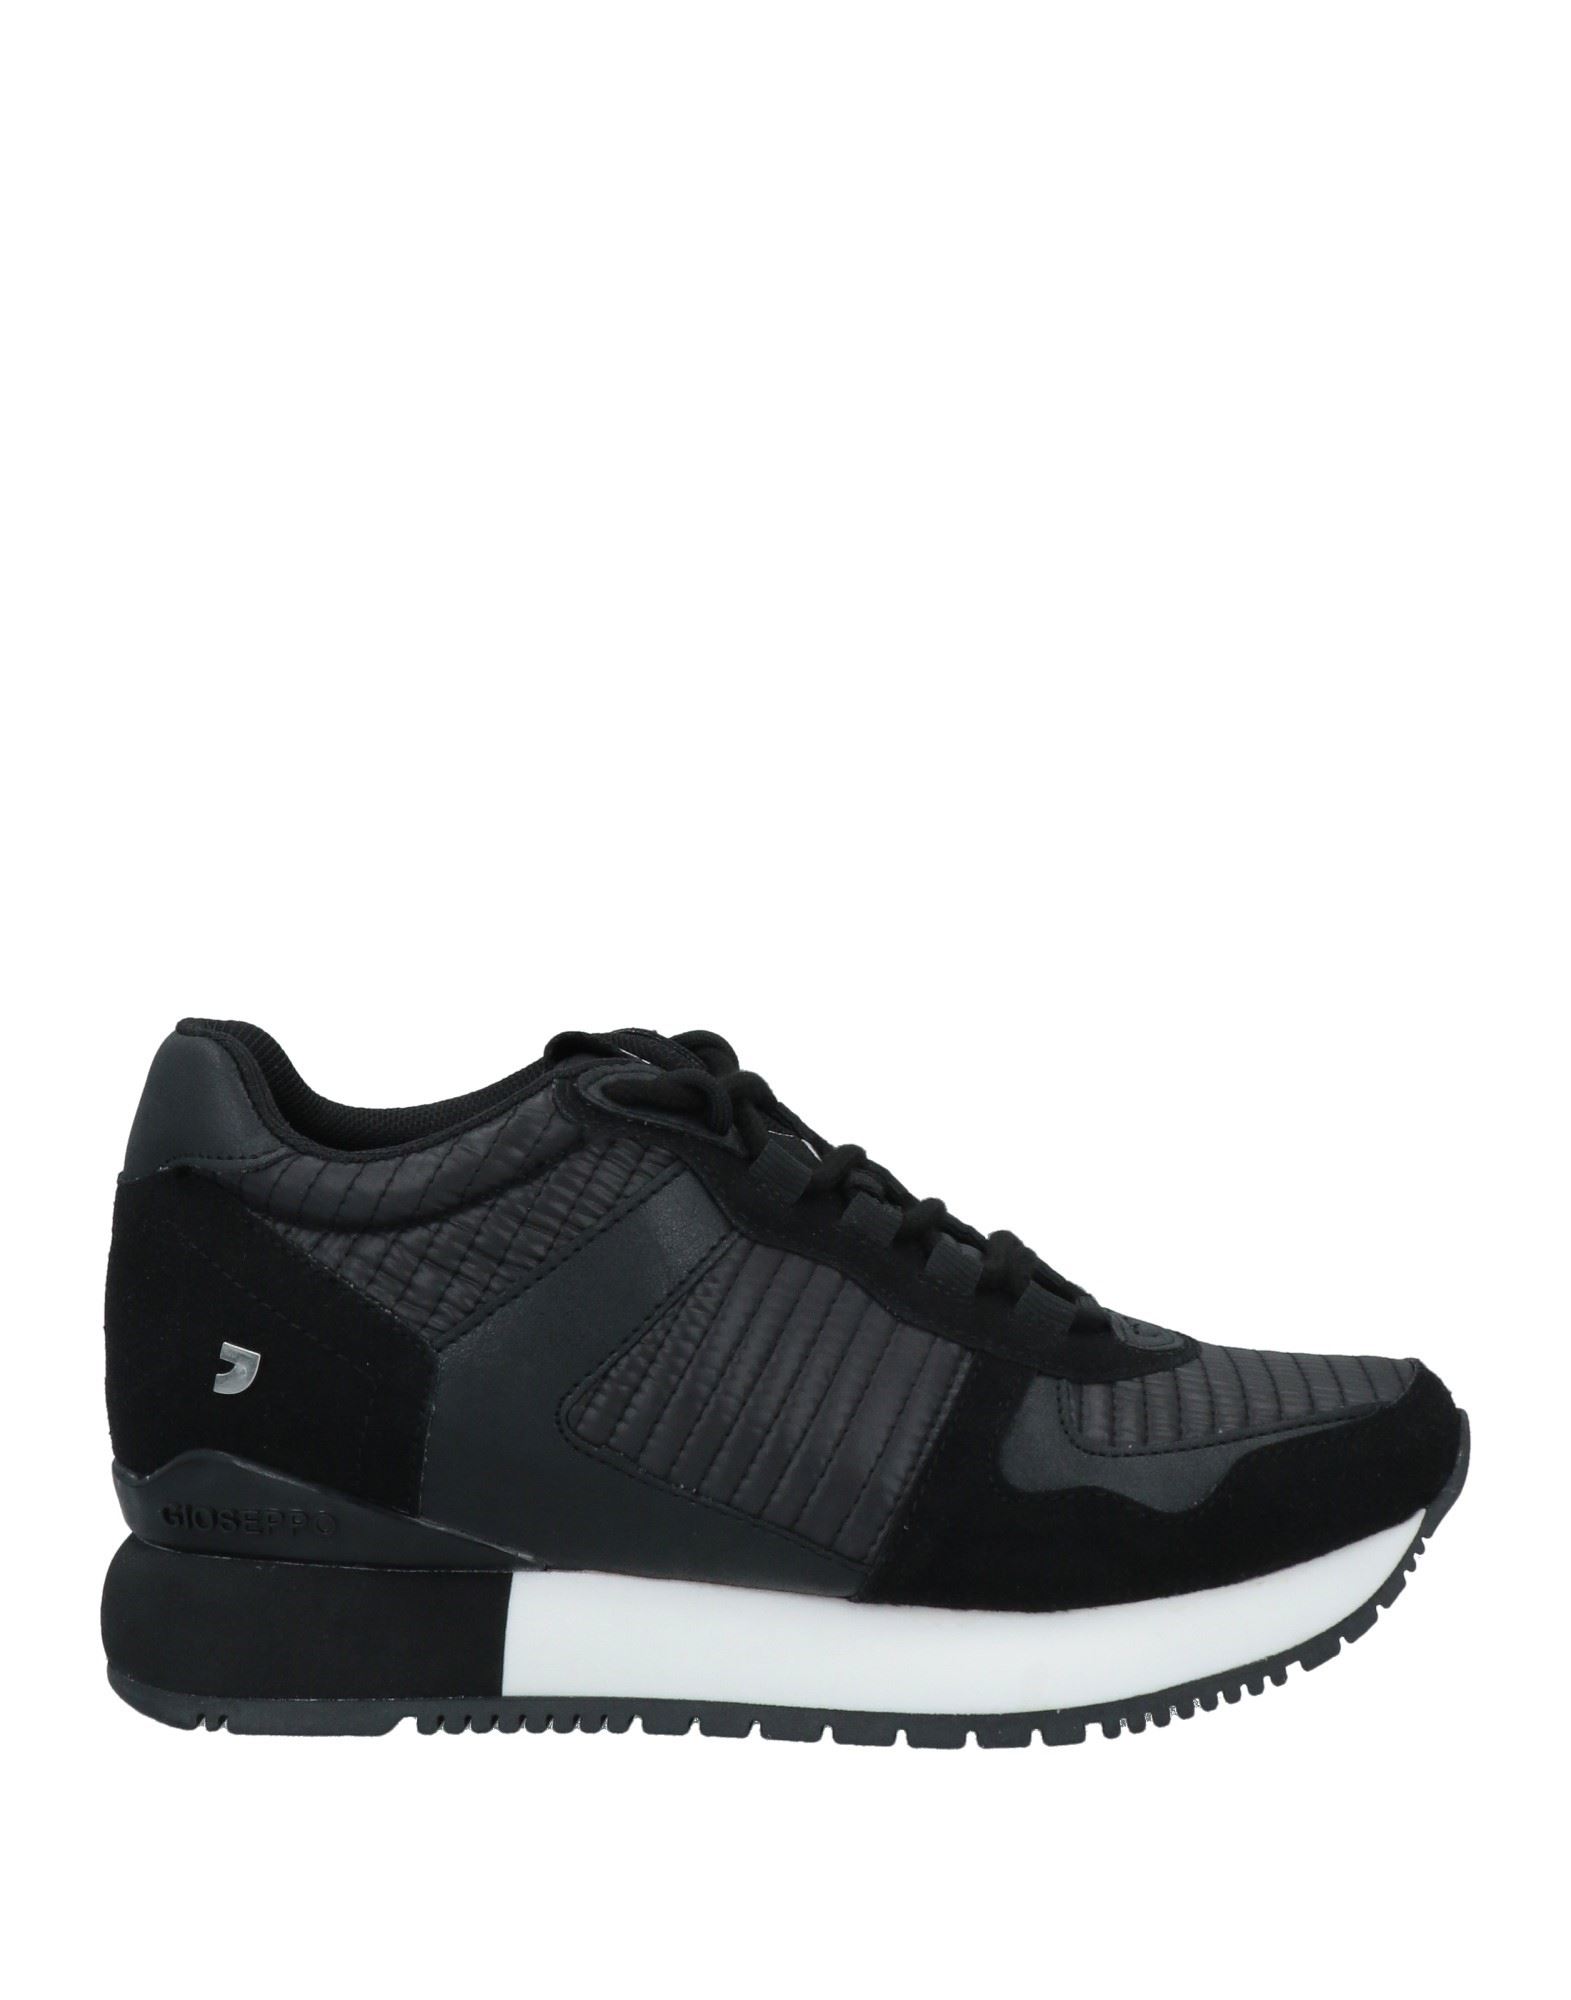 Gioseppo Sneakers In Black